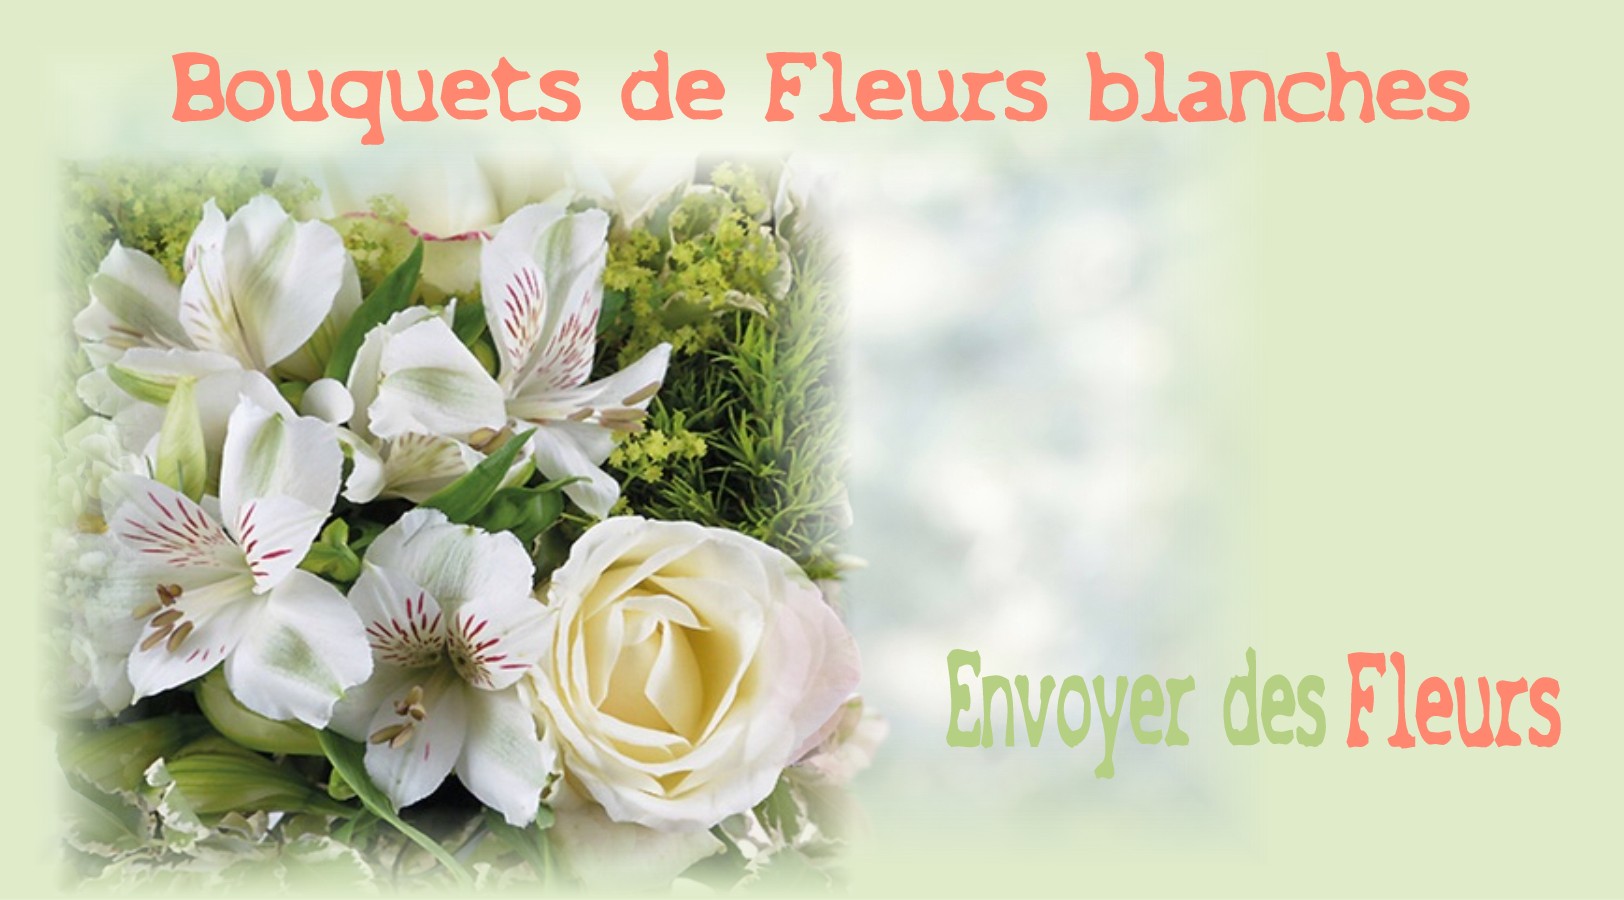 BOUQUETS DE FLEURS BLANCHES